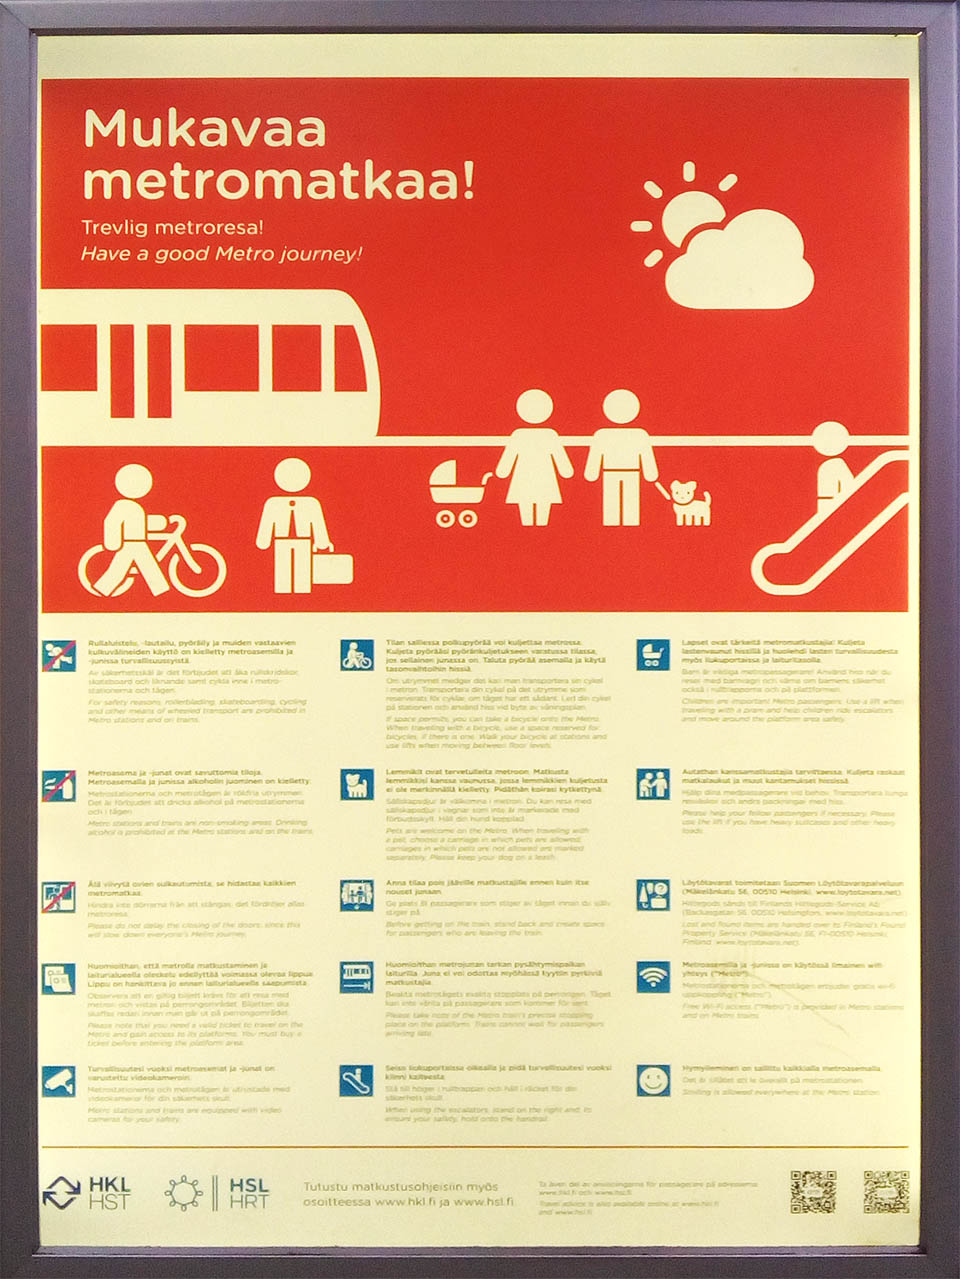 Ačkoliv jsme dlouho přemýšleli, jak vypadá mukavá metromatká, nakonec jsme zjistili, že ve finštině jde o šťastnou cestu metrem.